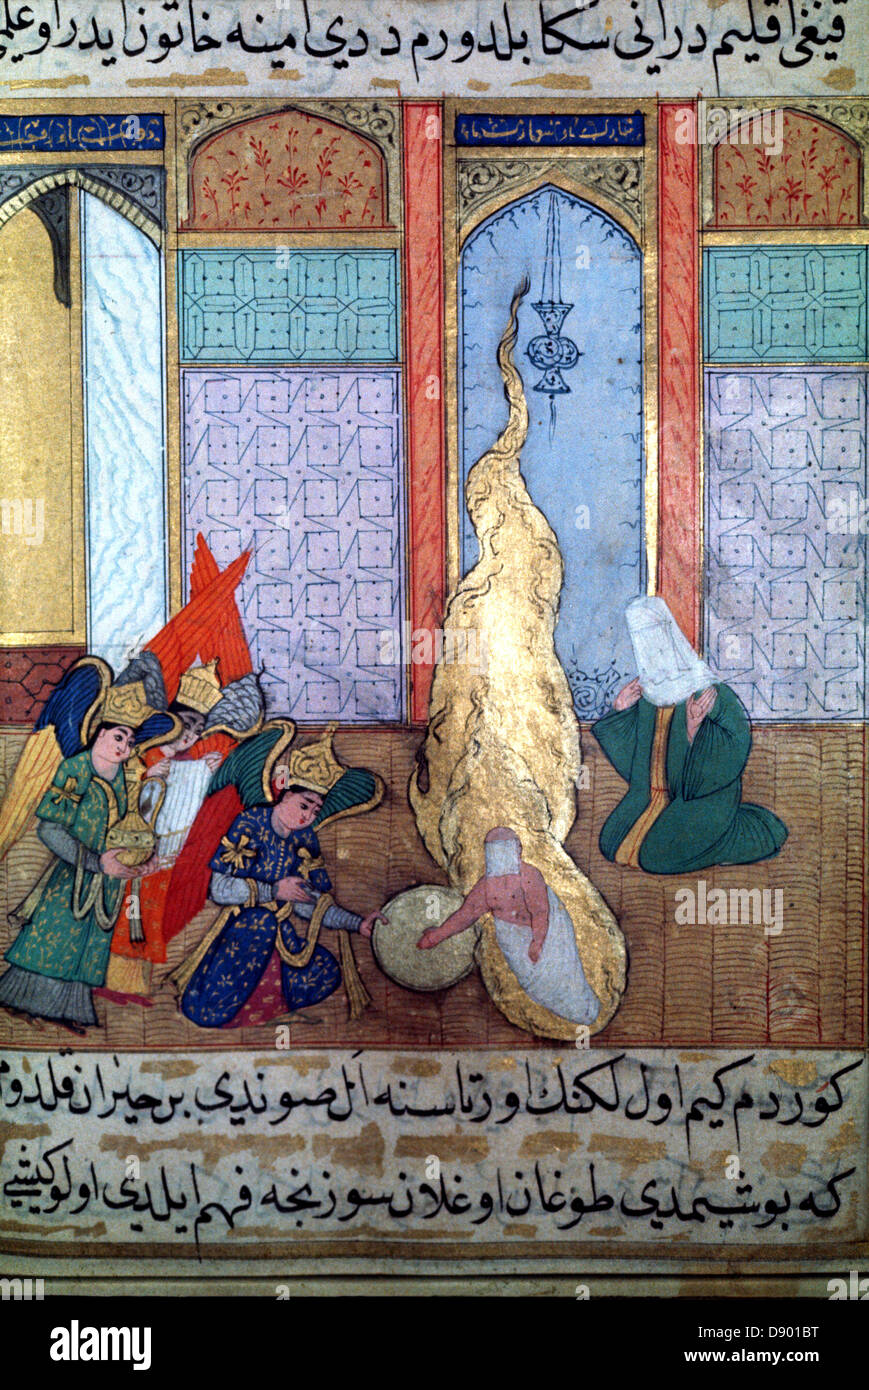 Naissance du Prophète, 16e siècle Mme H1223, le palais de Topkapi, Istanbul, Turquie Banque D'Images